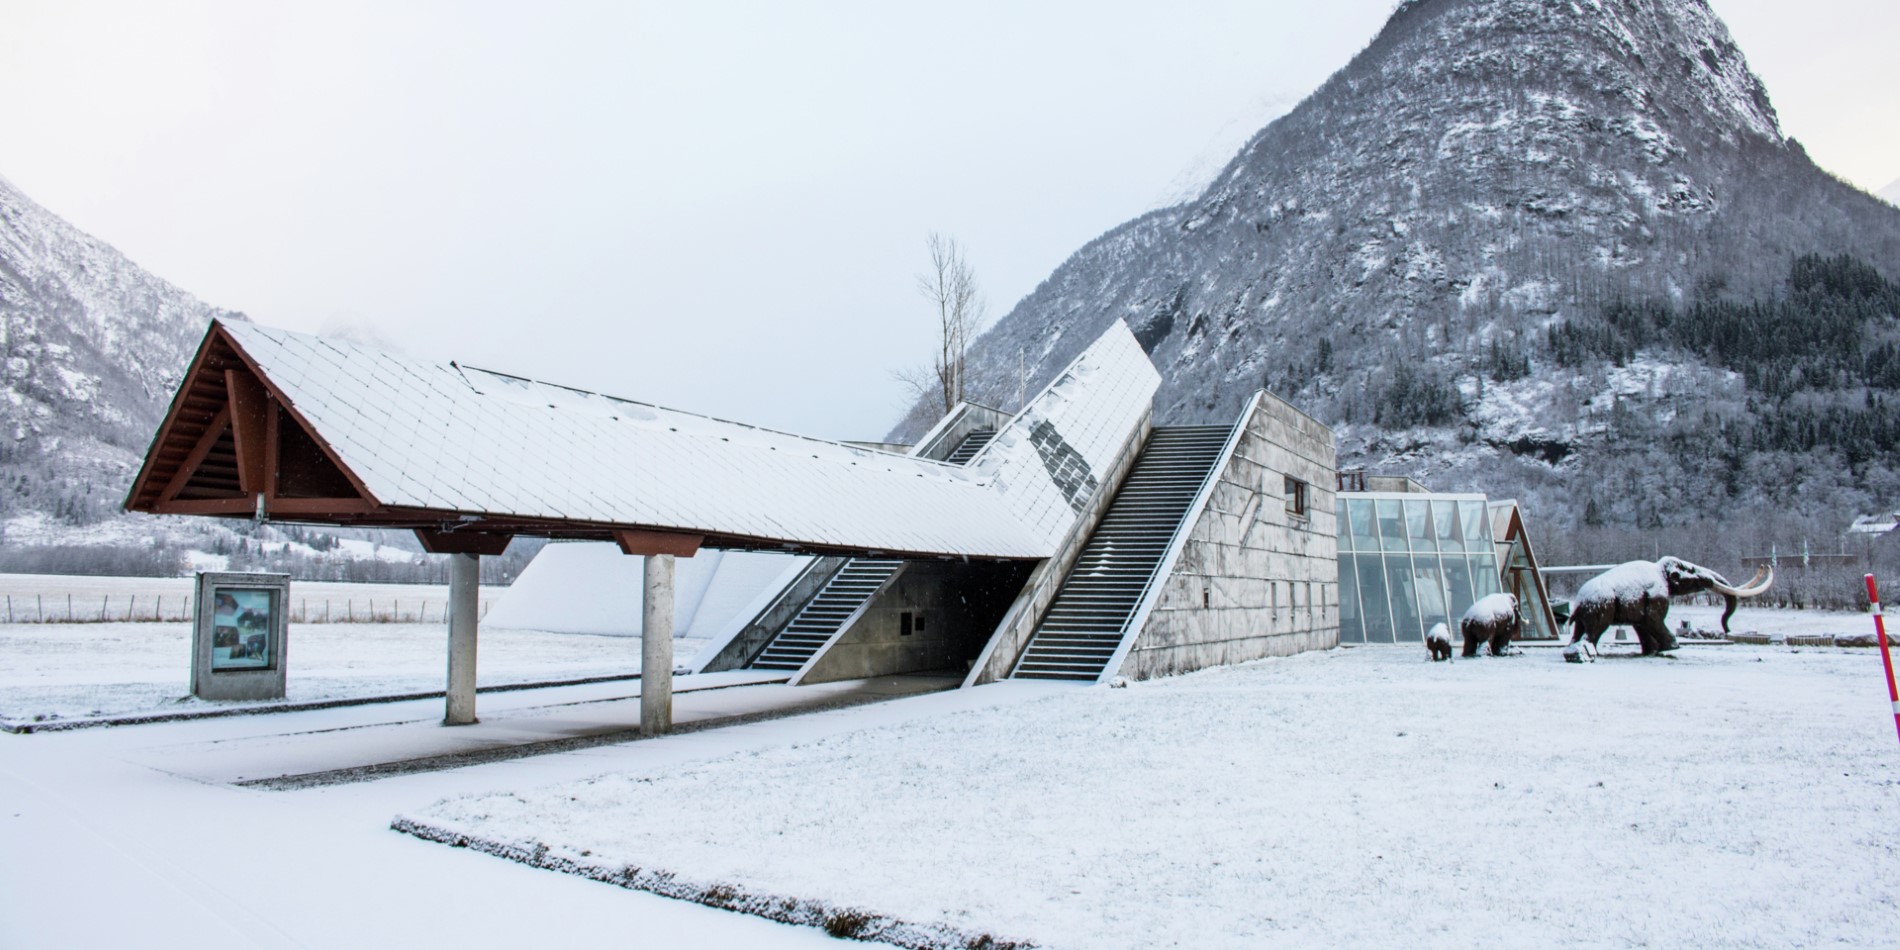 Norwegian Glacier Museum, Fjærland, Norway